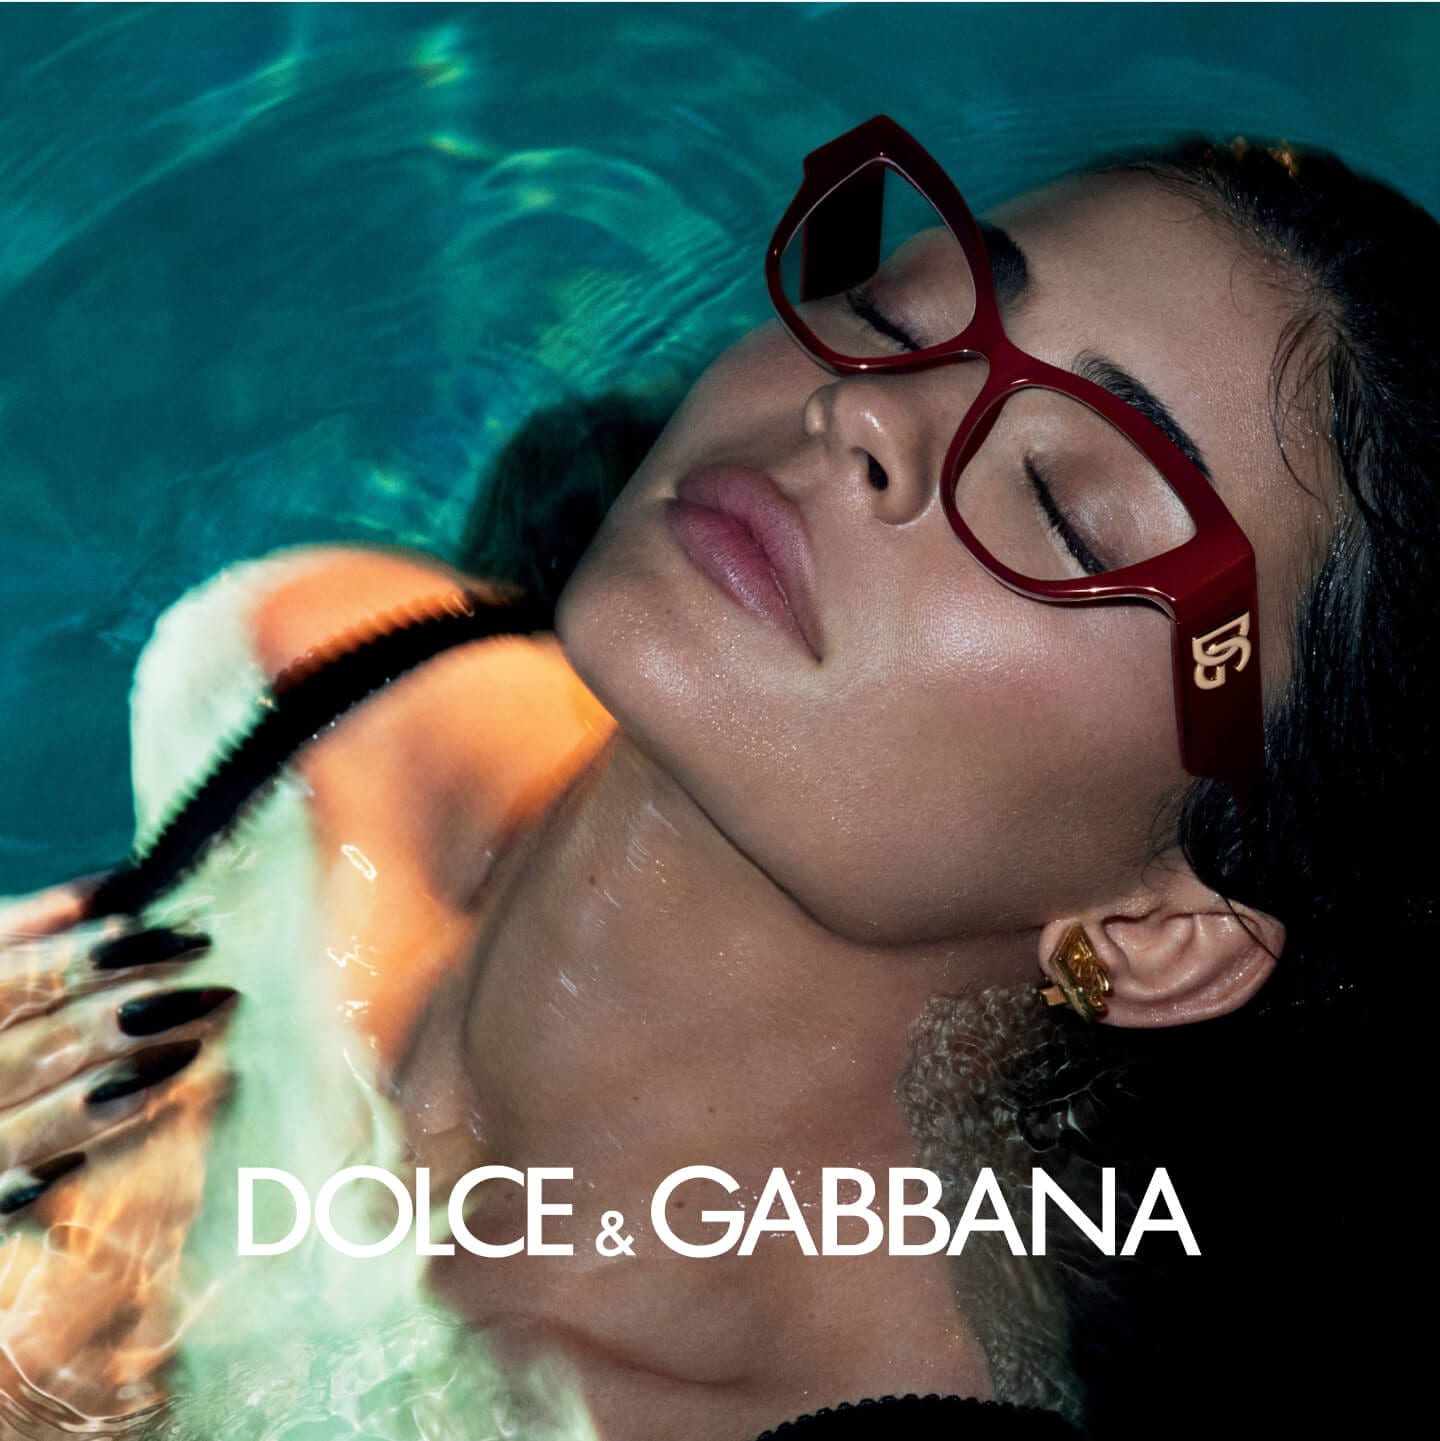 Dolce & Gabbana banner image